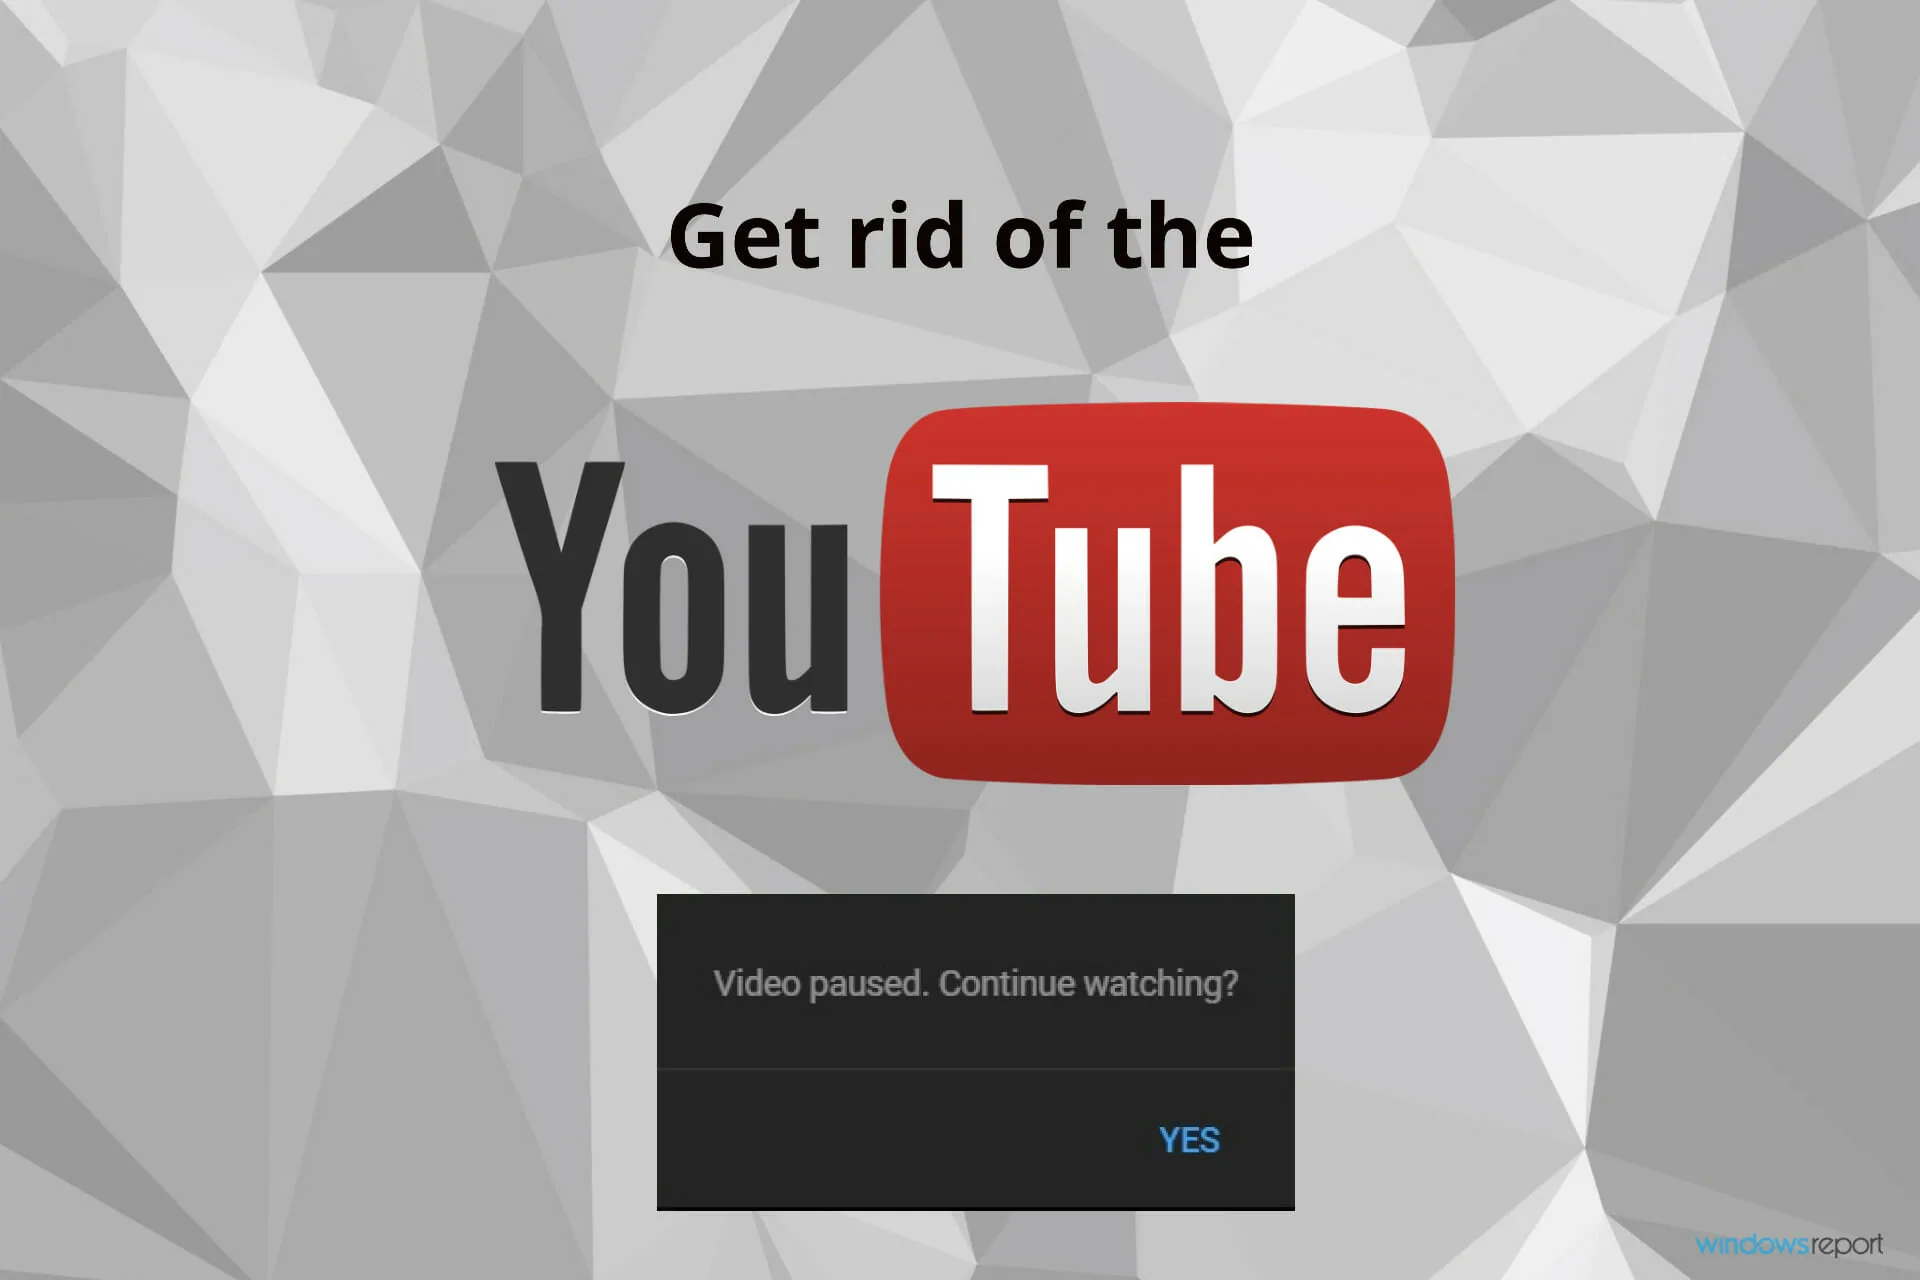 zbavte se videa na YouTube pozastaveno pokračujte ve sledování vyskakovacího okna